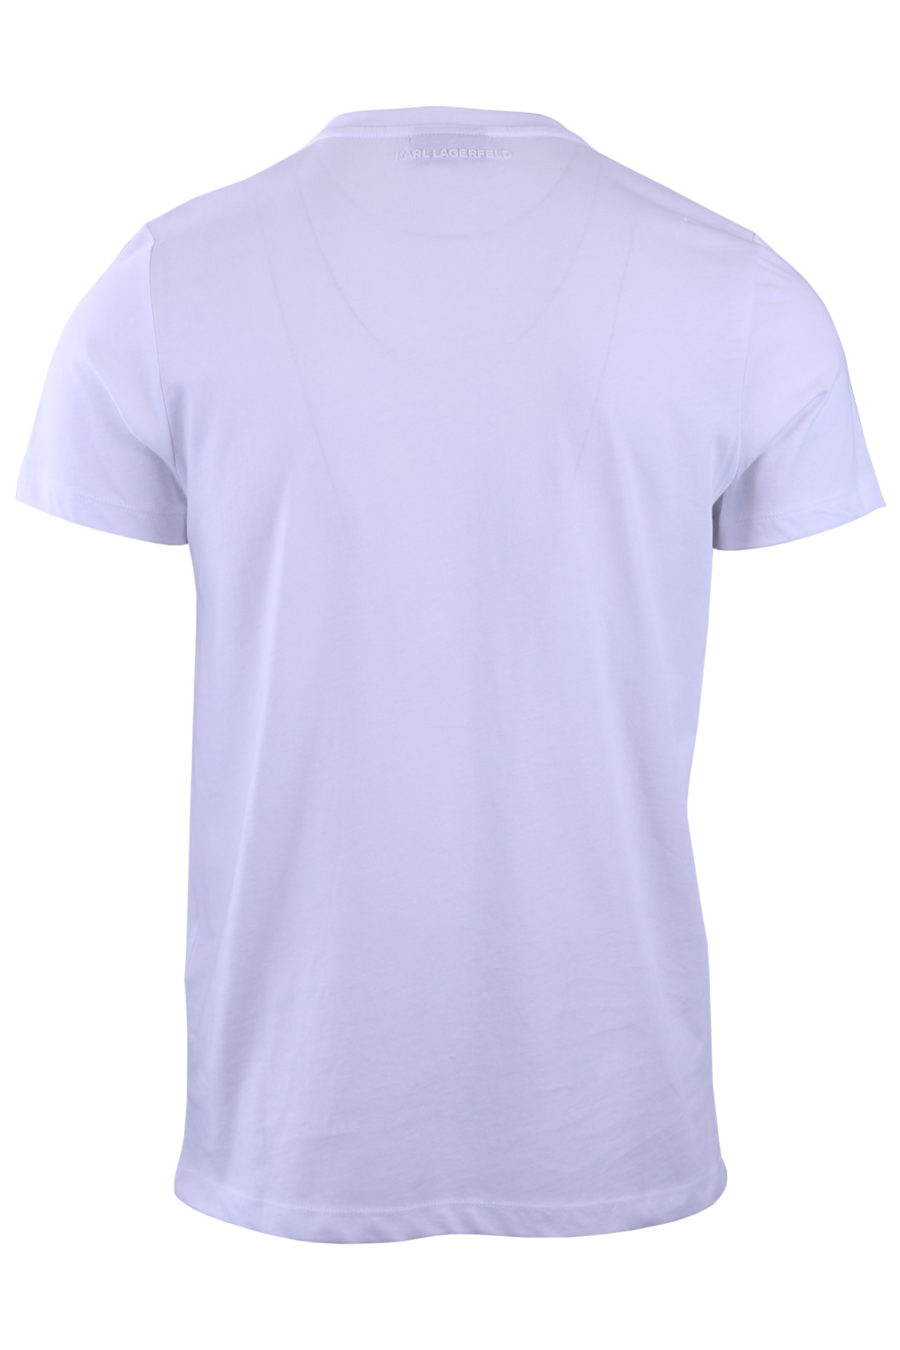 T-shirt branca com perfil Karl prateado - 7c5495990f27502af52510b72a52aff9cffc4c41